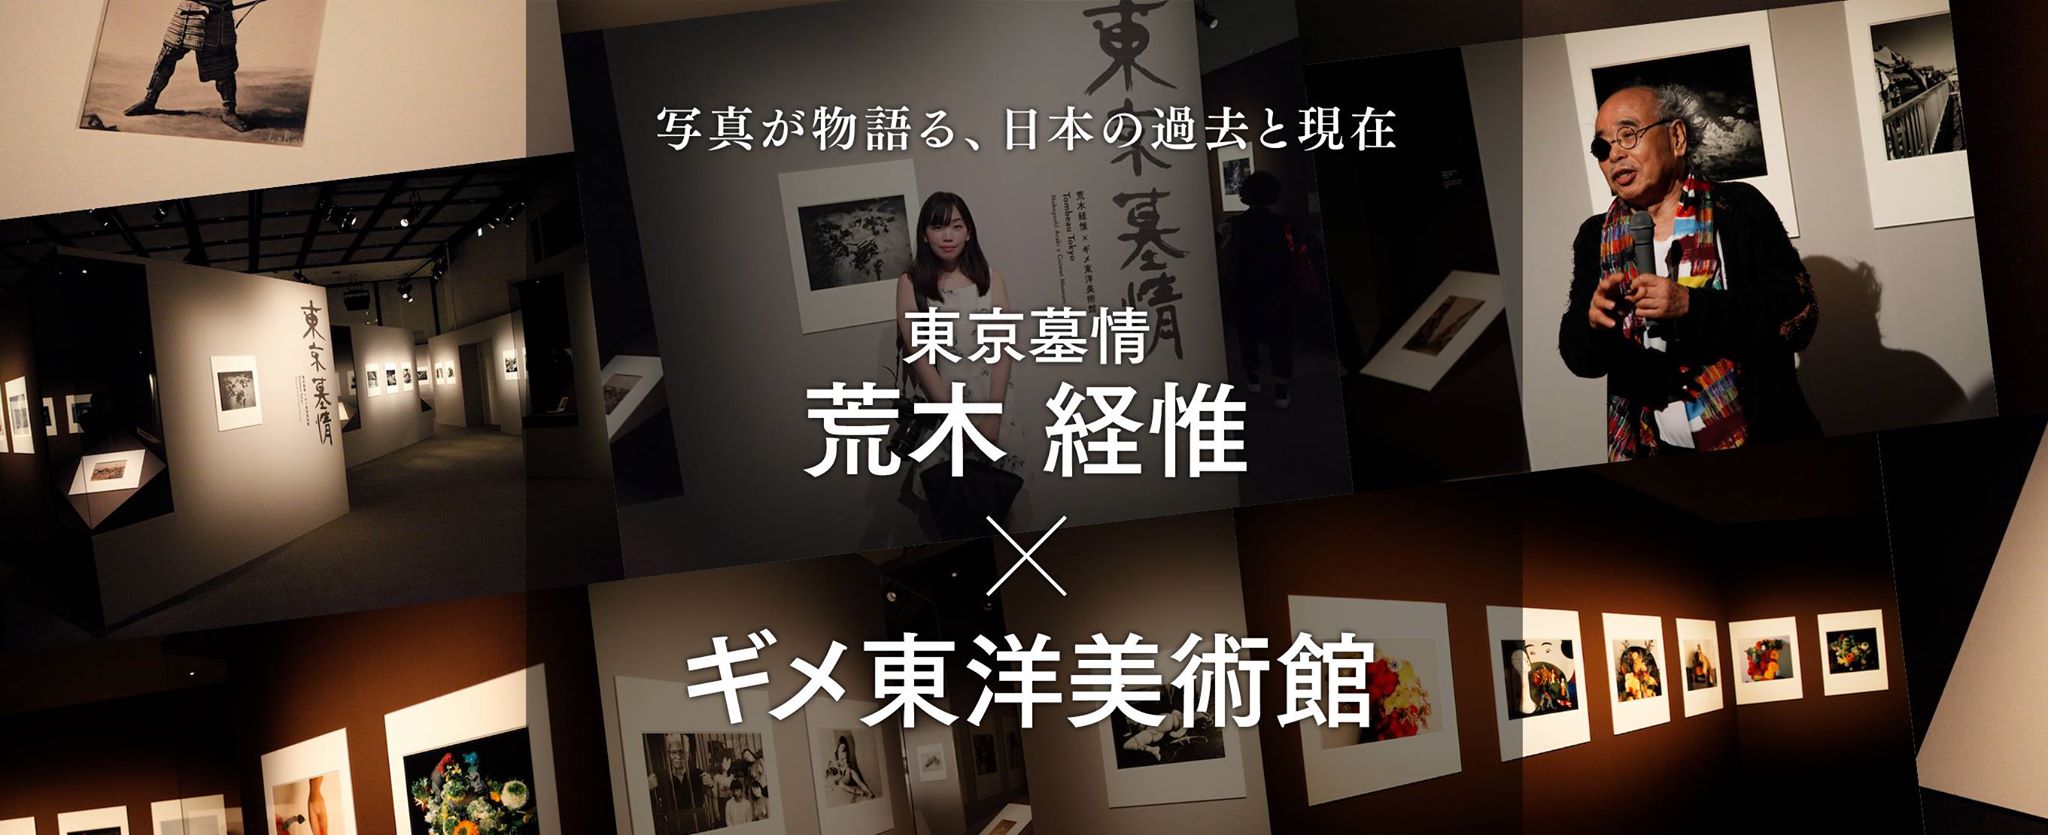 写真が物語る、日本の過去と現在「東京墓情 荒木経惟×ギメ東洋美術館」